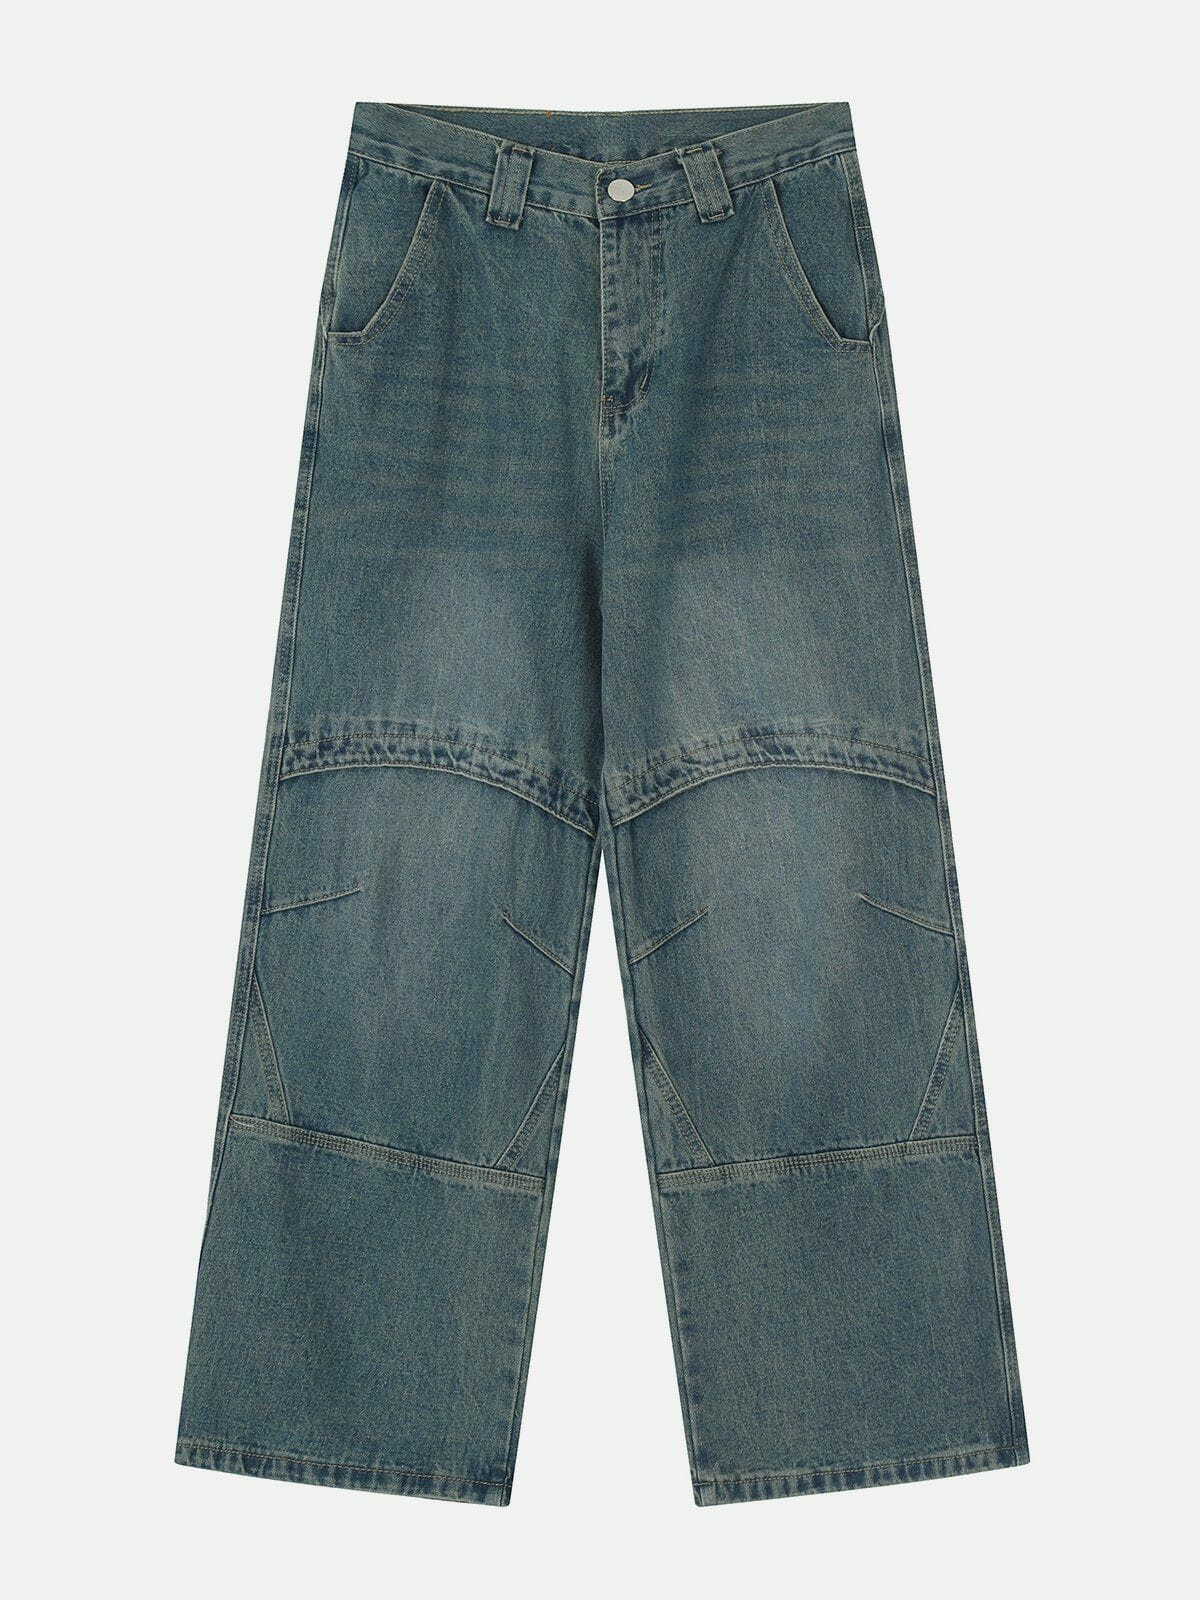 retro folded jeans edgy & stylish denim 4386